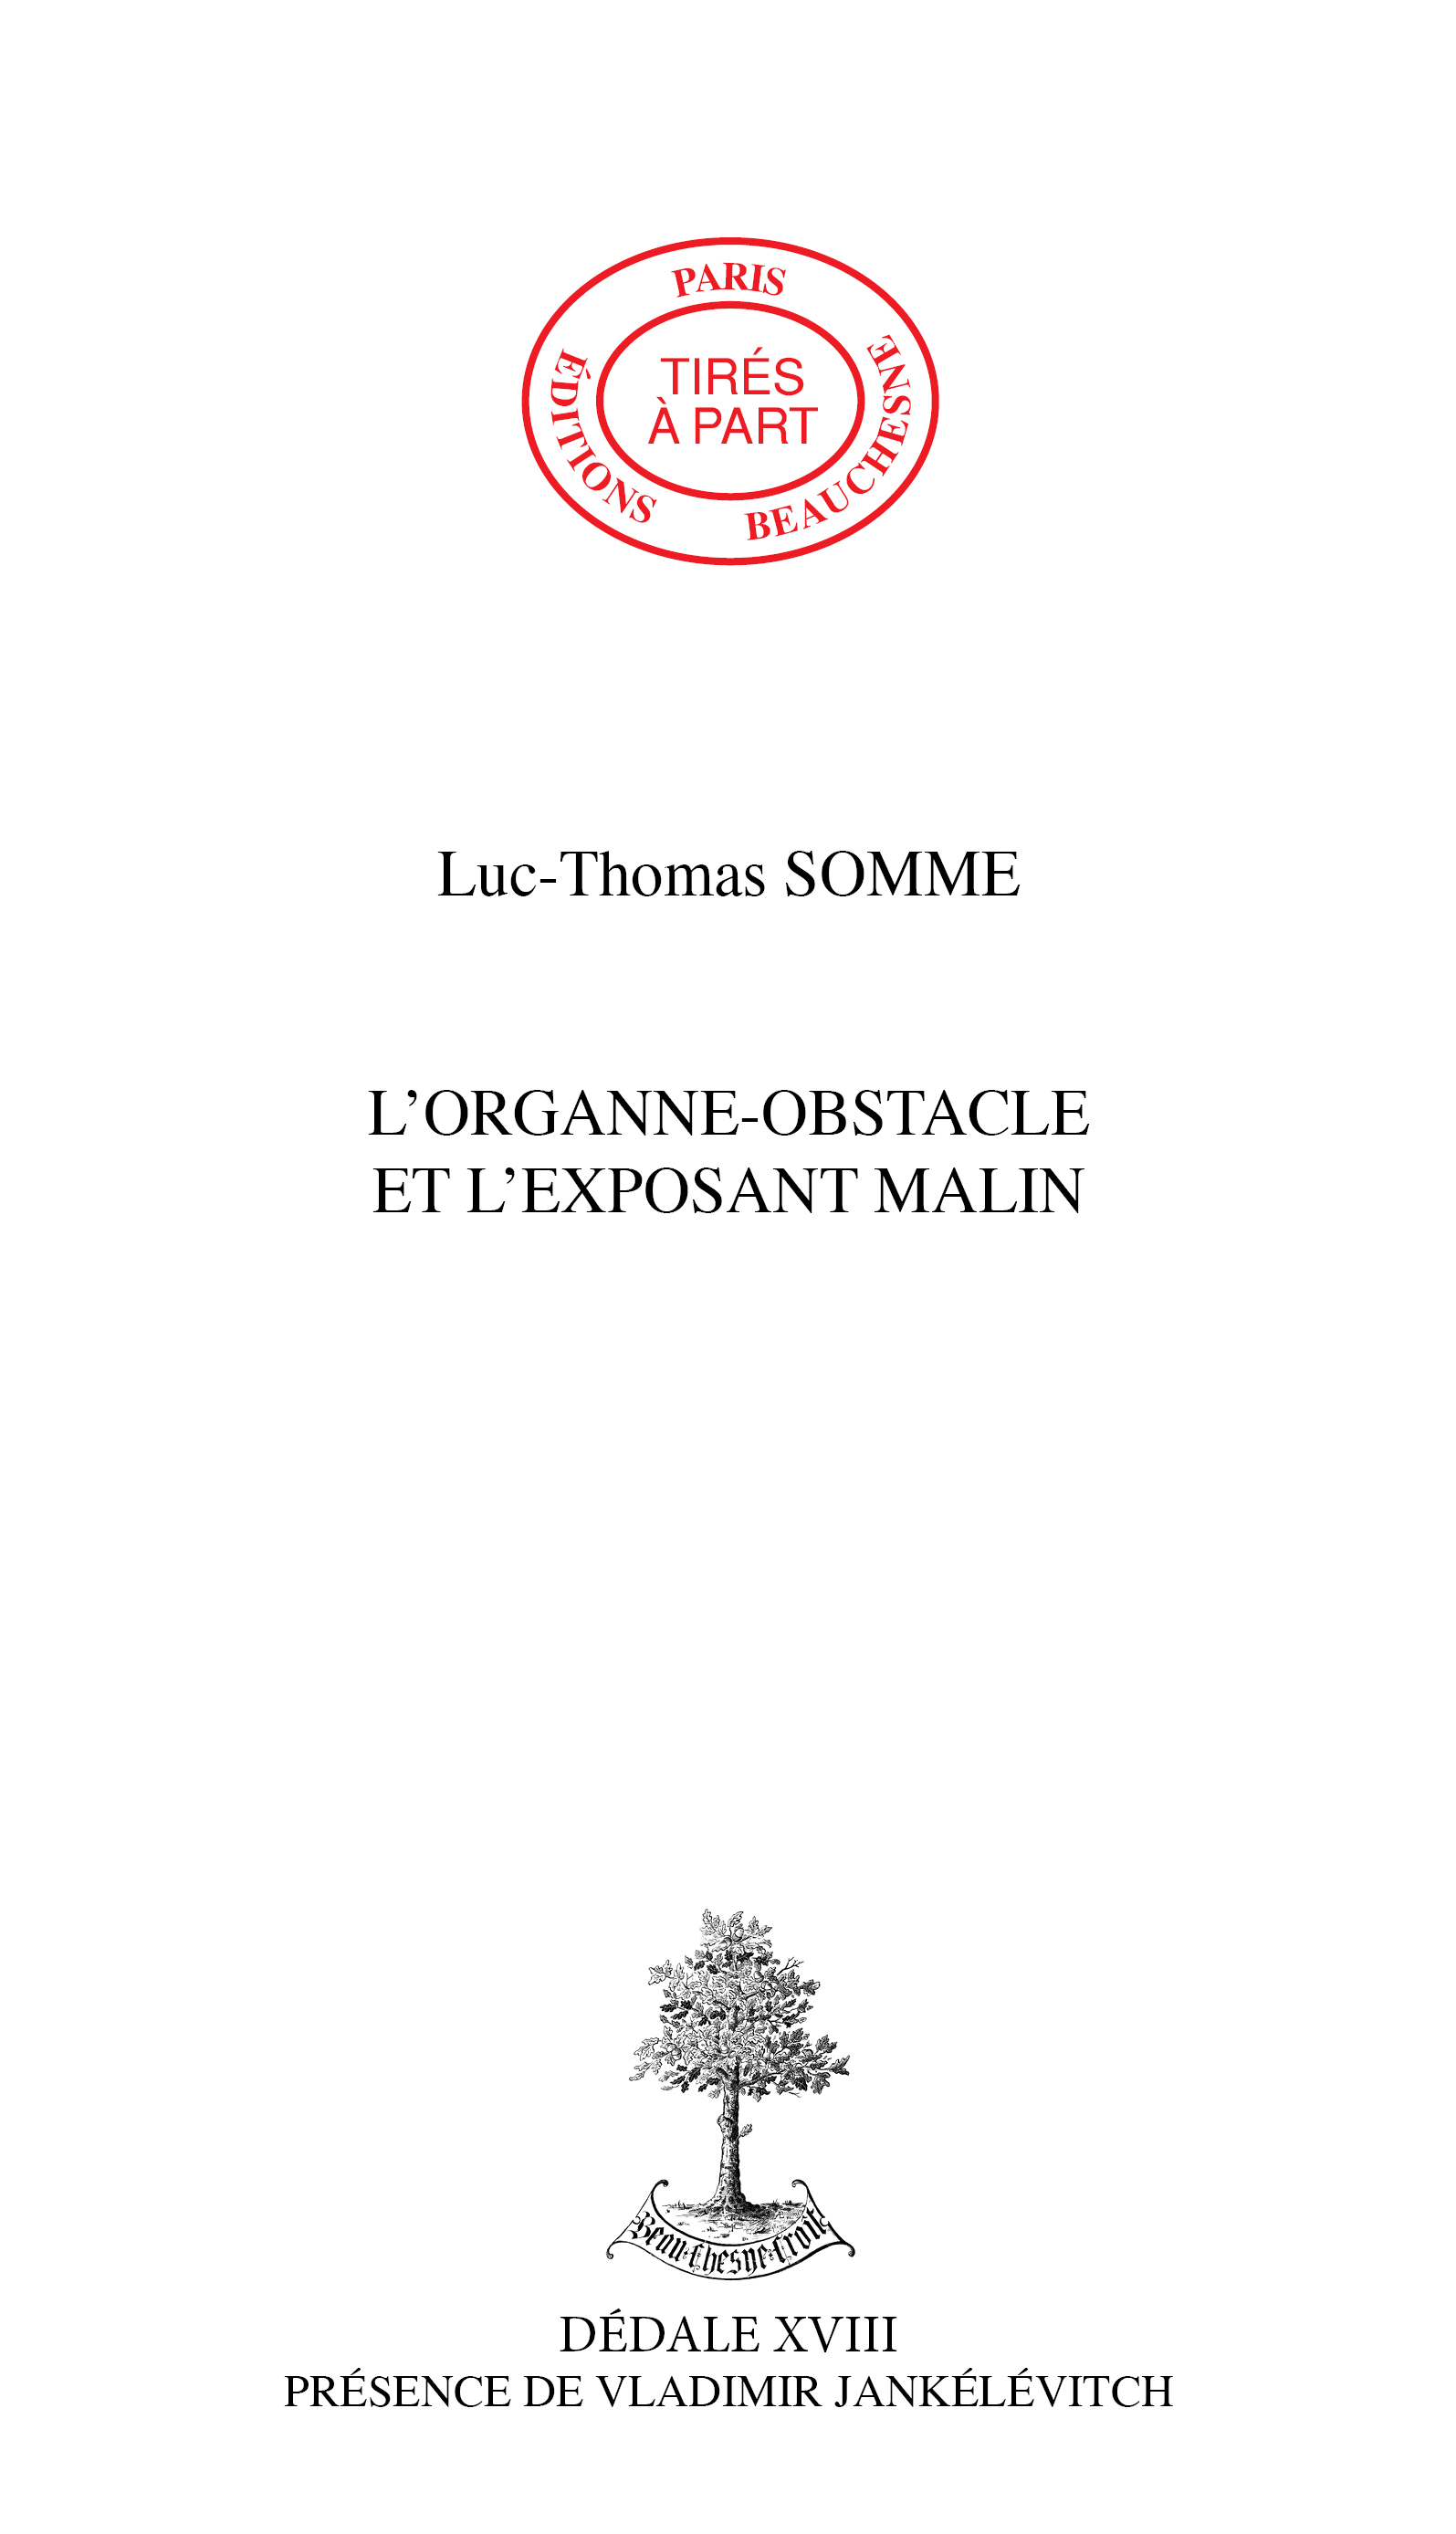 15. L'ORGANNE-OBSTACLE ET L'EXPOSANT MALIN